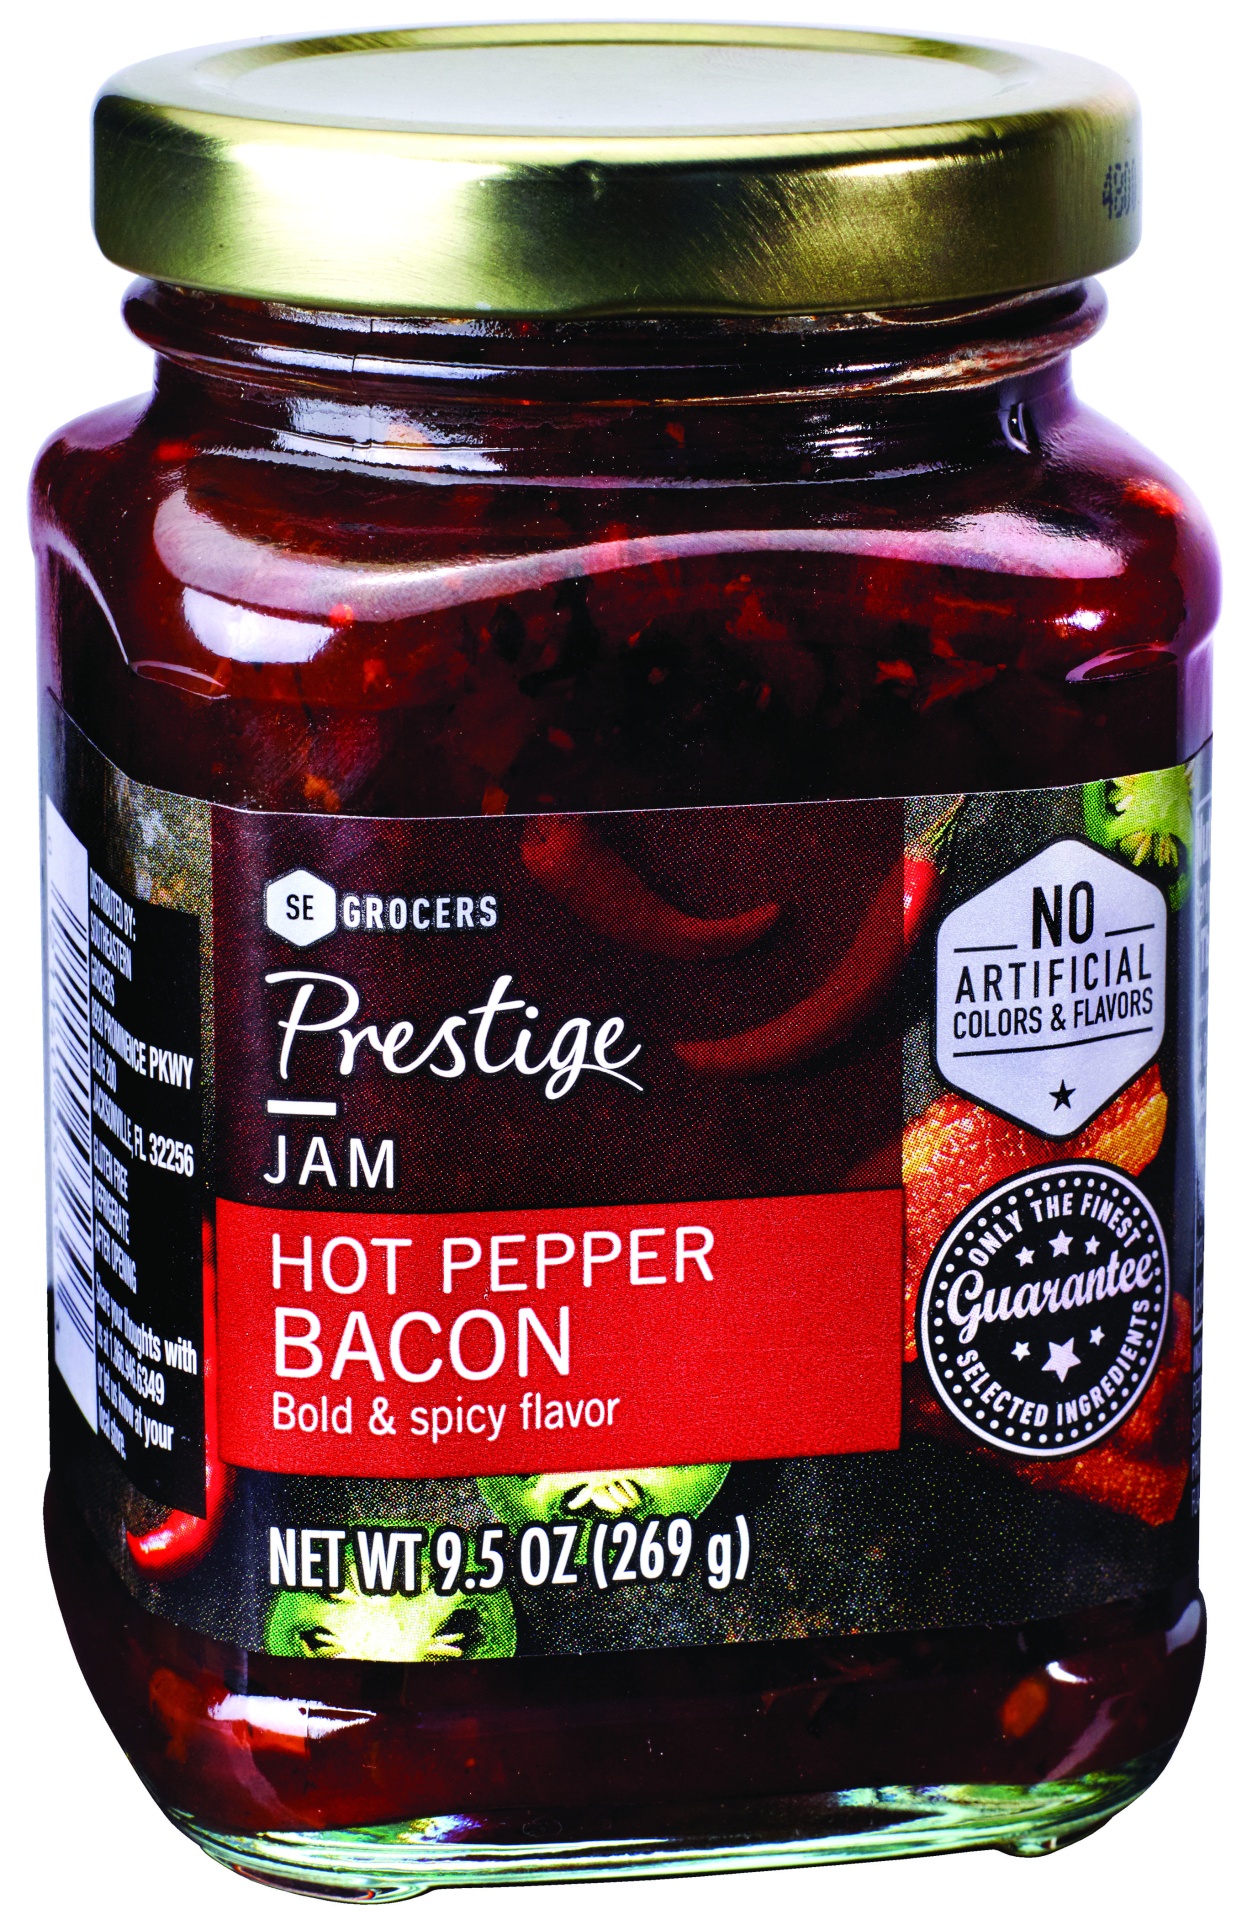 slide 1 of 1, SE Grocers Prestige Hot Pepper Bacon Jam, 10.5 oz